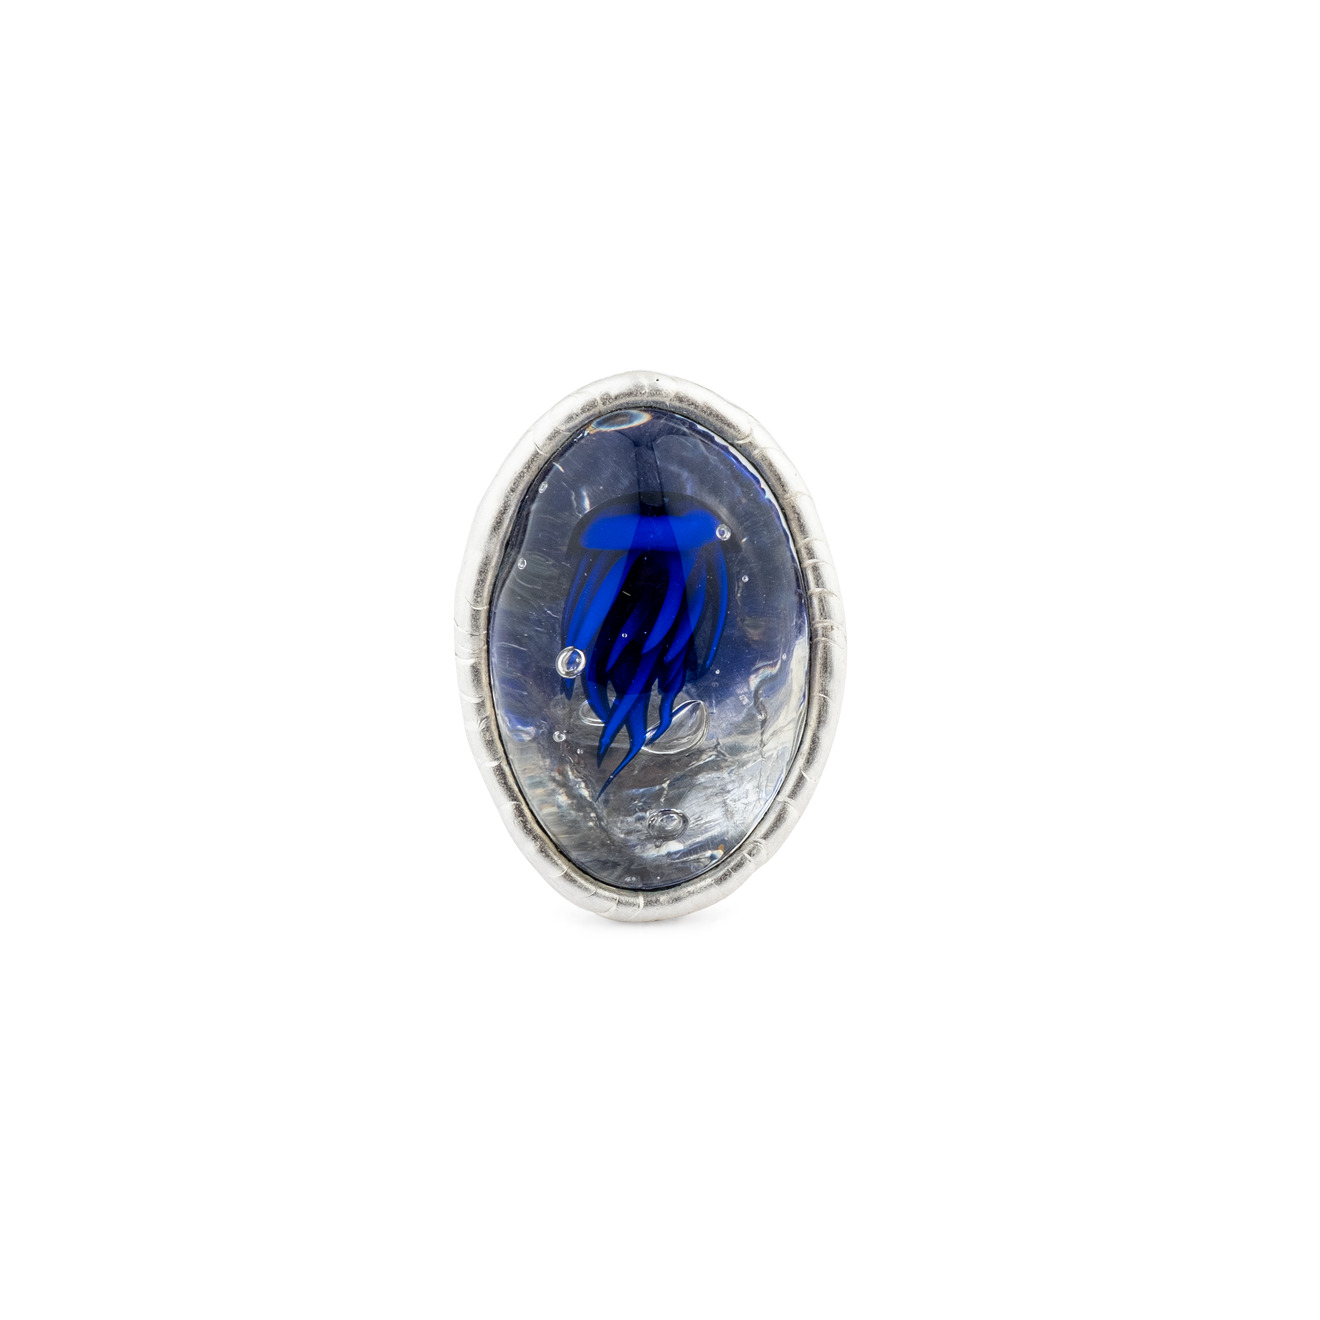 Poison Drop Lab Кольцо с серебряным покрытием с синей медузой и прозрачным стеклом poison drop lab серьги с серебряным покрытием с дихроическим синим стеклом